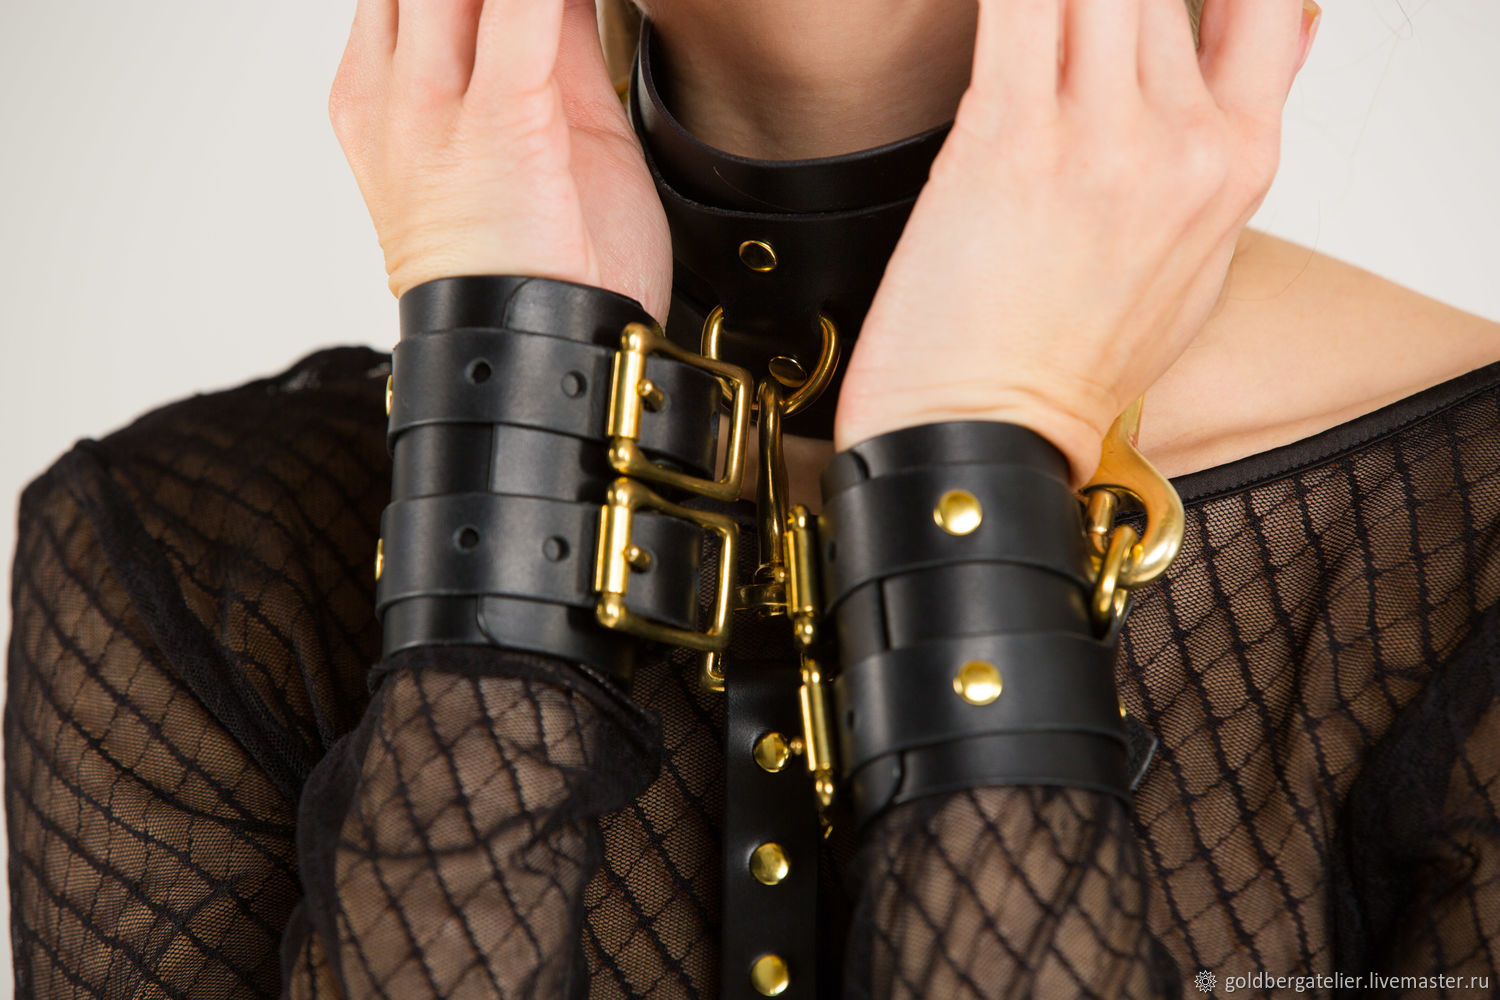 Купить наручники БДСМ для ролевых секс игр в Москве